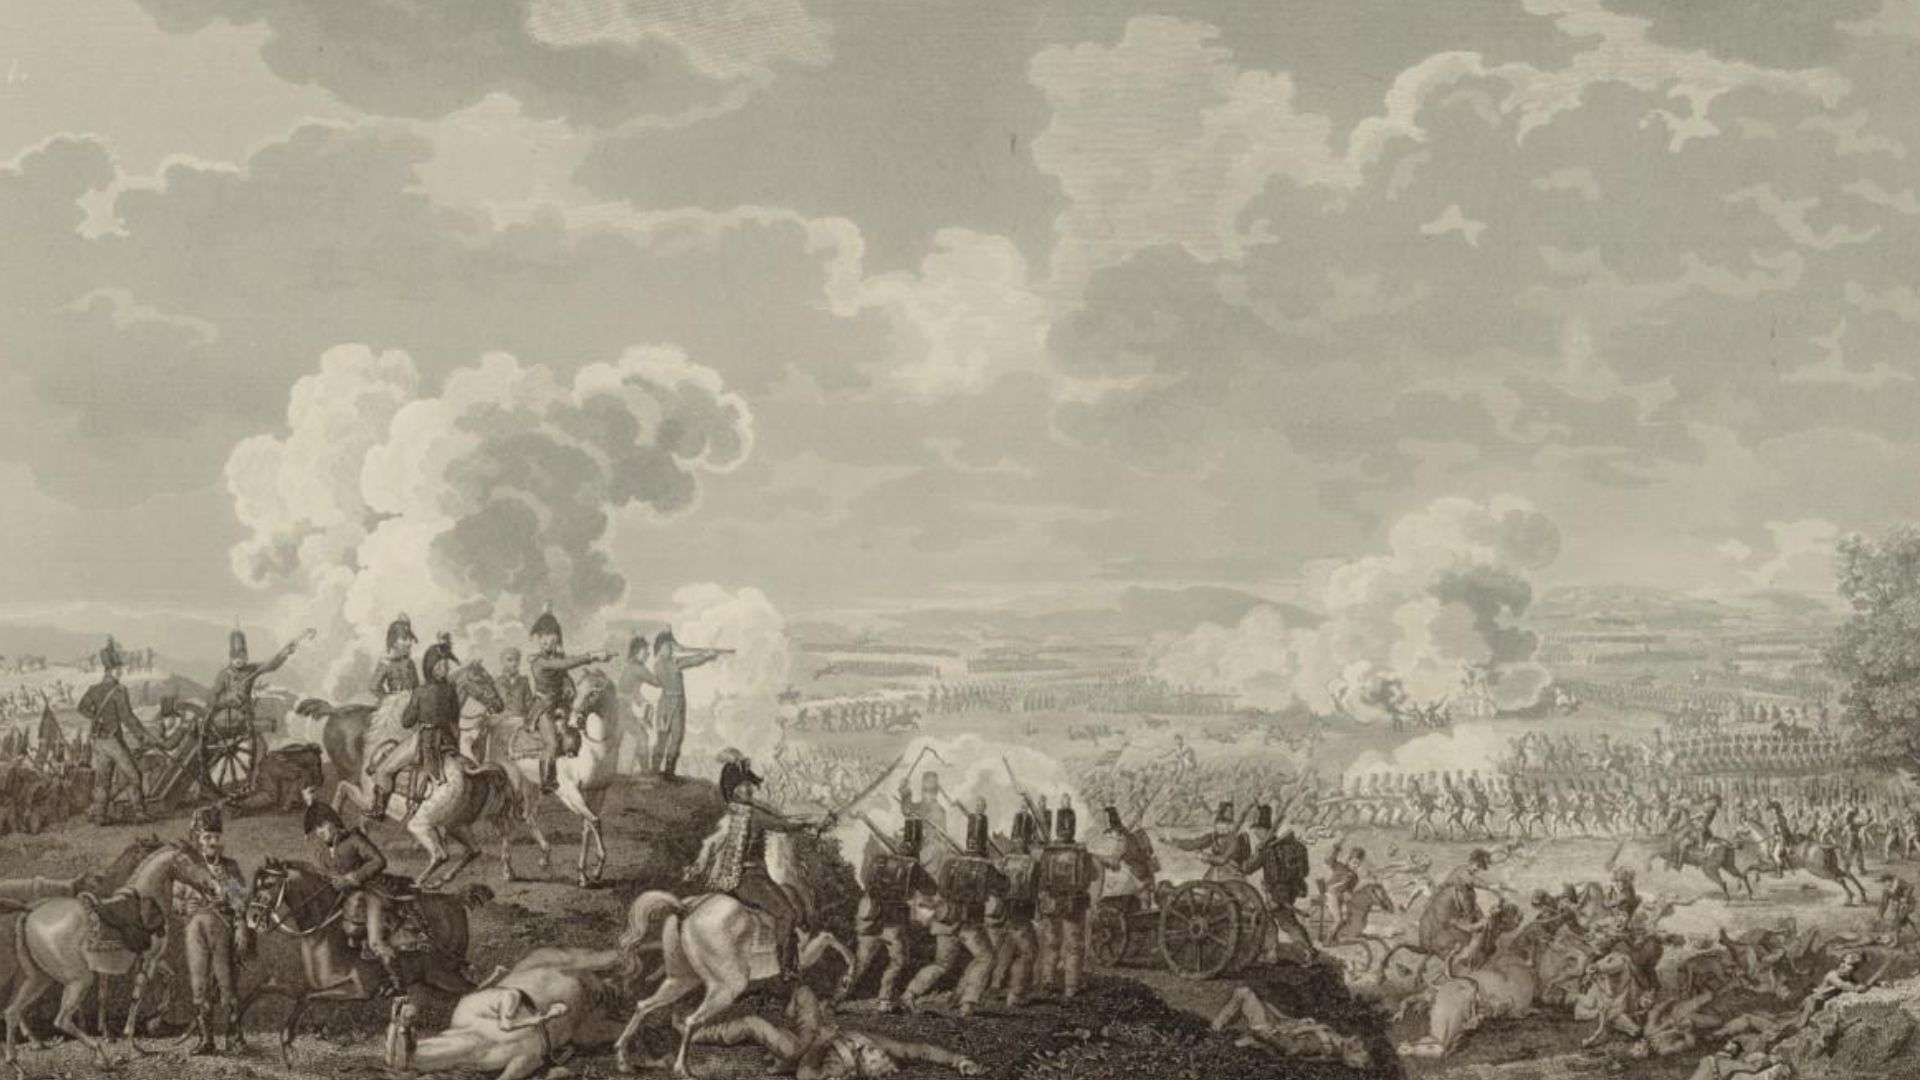 La batalla de Talavera, uno de los enfrentamientos más sangrientos de la Guerra de Independencia